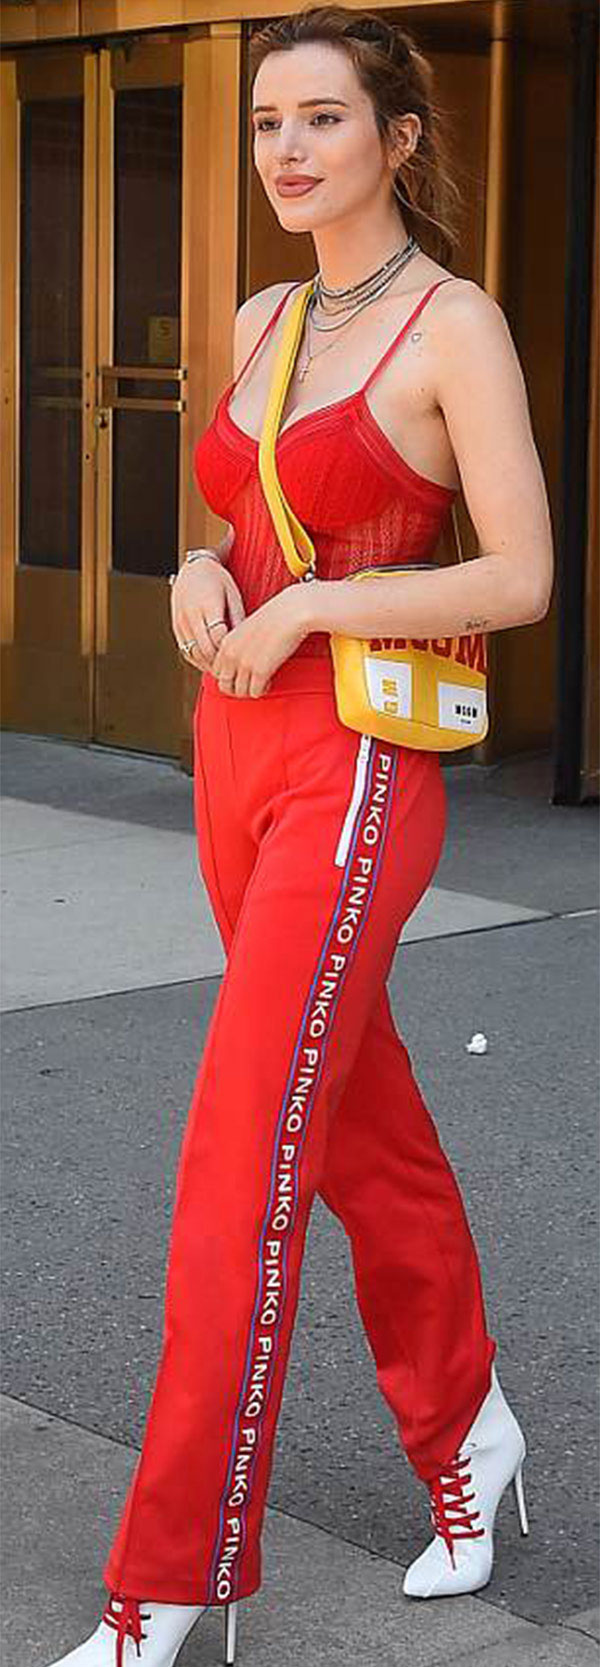 ABD'li oyuncu Bella Thorne, dün günün erken saatlerinde New York'ta görüntülendi. Yürürken bir anda kolunu kaldıran 20 yaşındaki oyuncunun tüylü koltuk altı dikkati çekti.